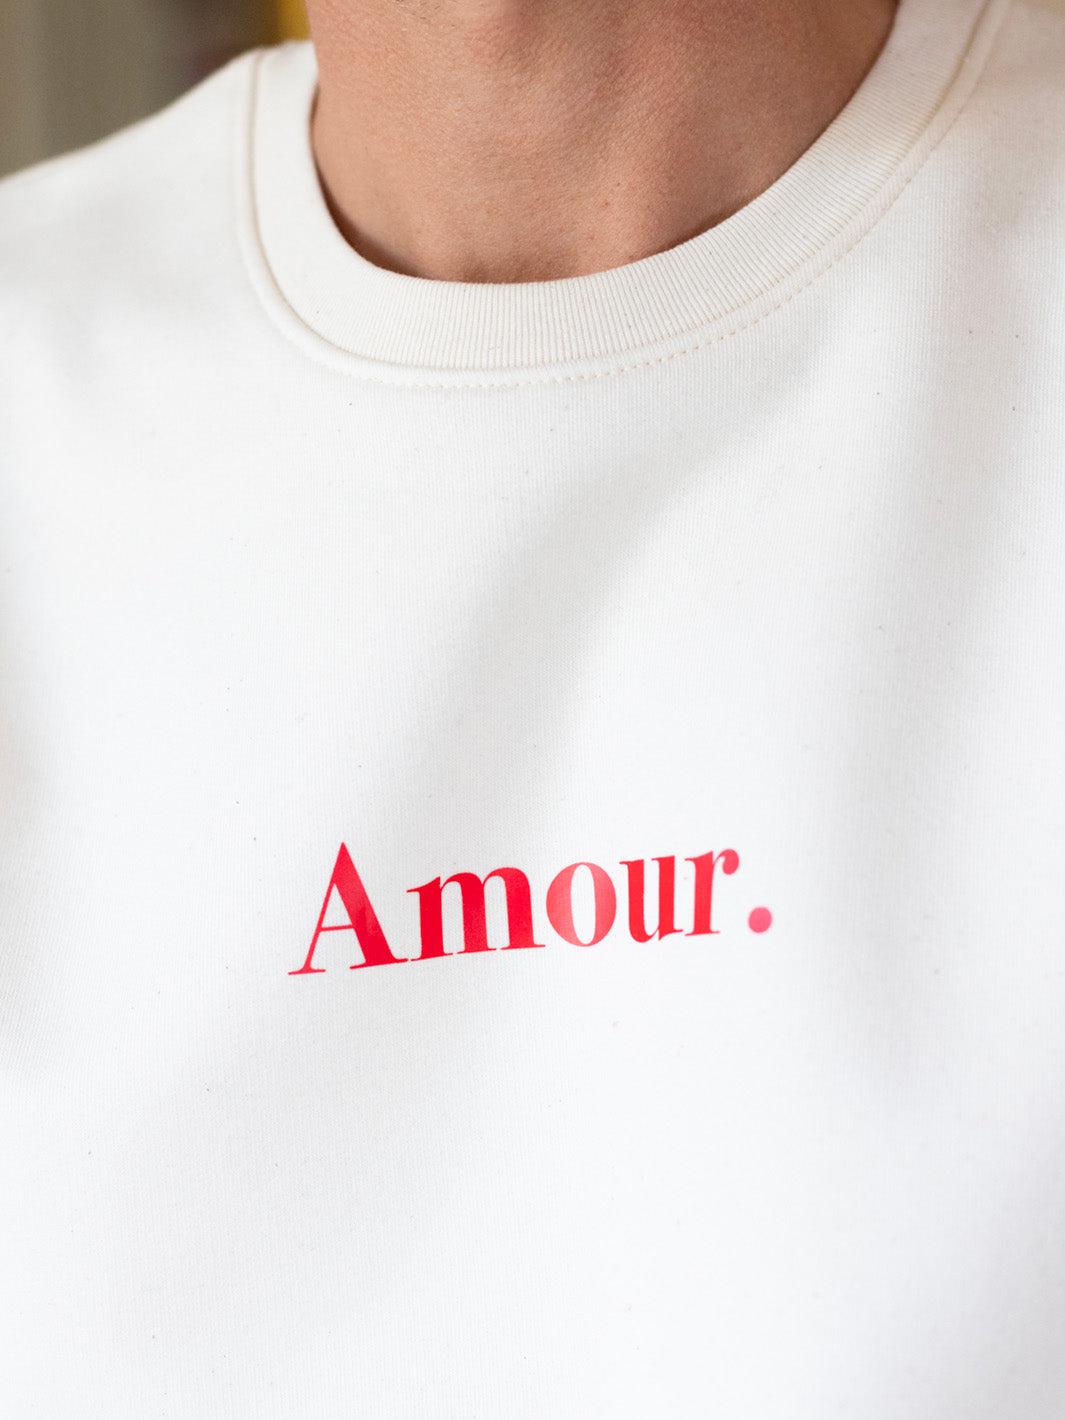 Le Classique "Amour." crème imprimé rouge F-Rufus Paris